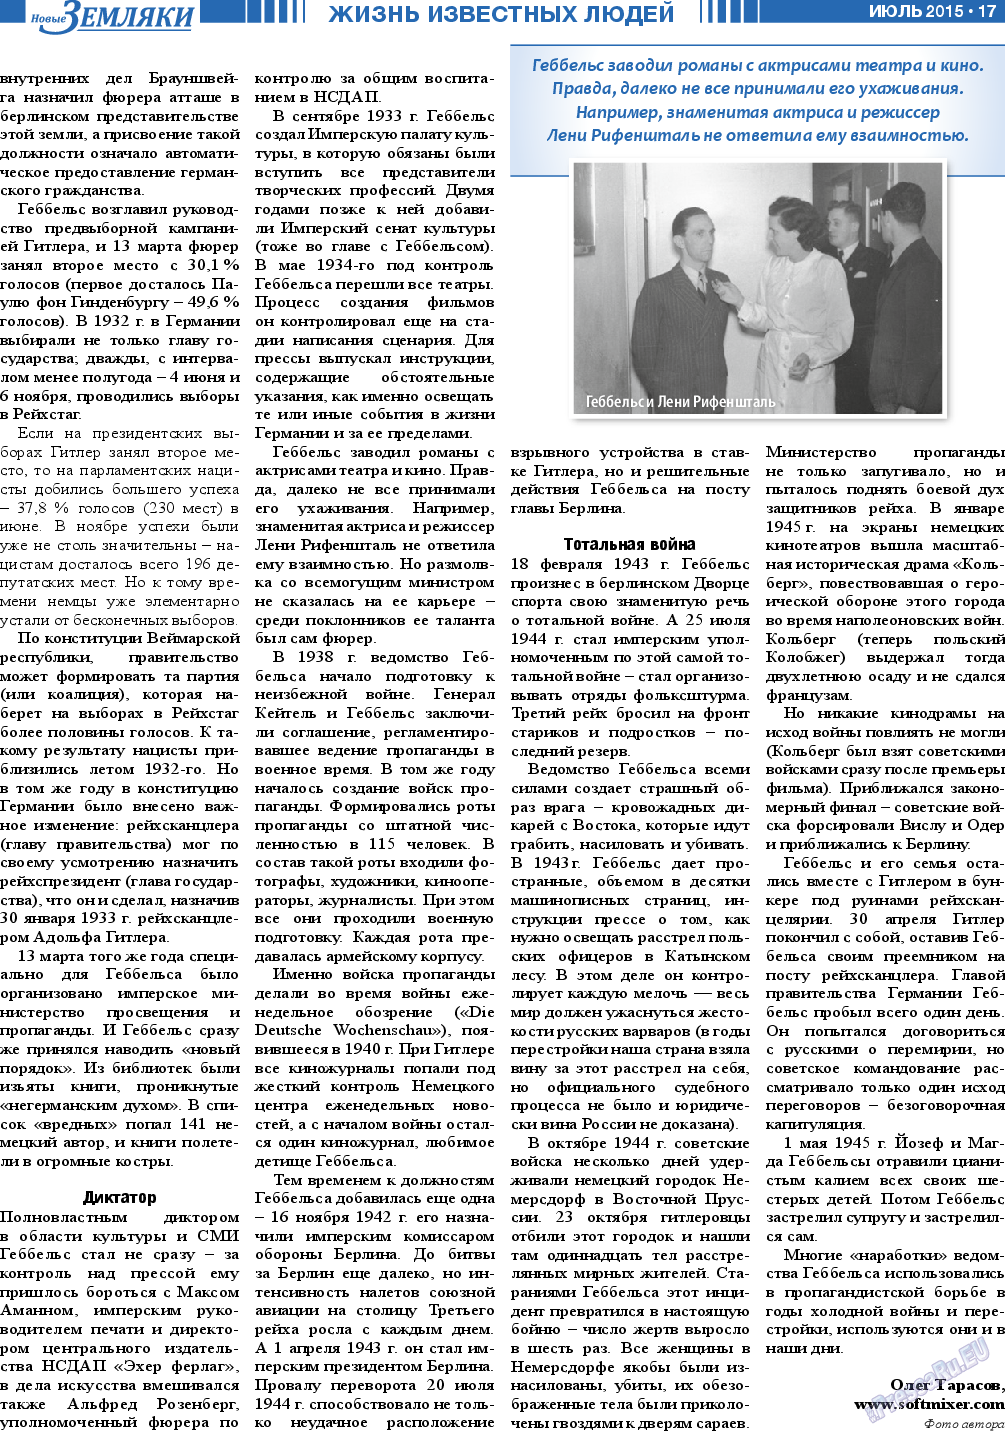 Новые Земляки, газета. 2015 №7 стр.17